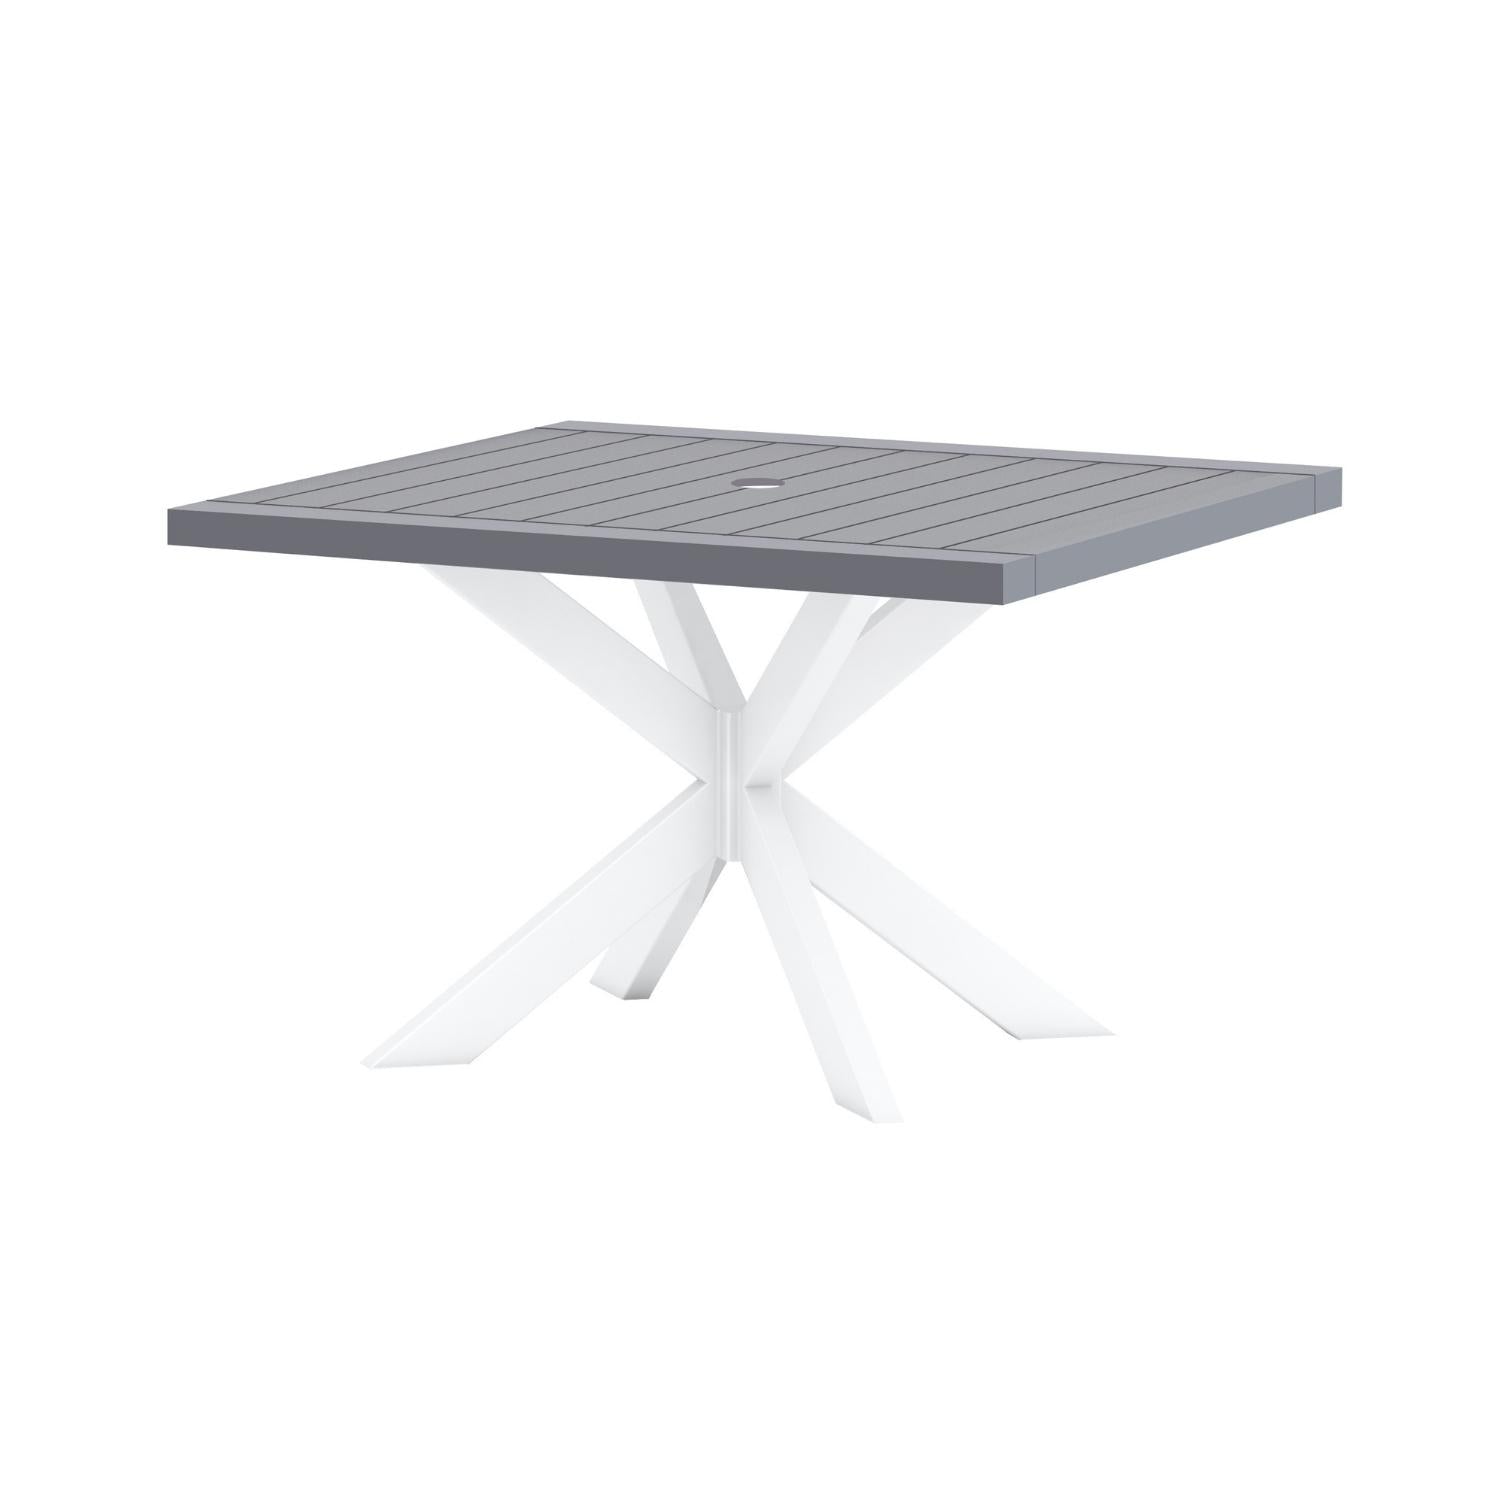 Shelta Bridgeport Aluminium Square Dining Table - Graphite